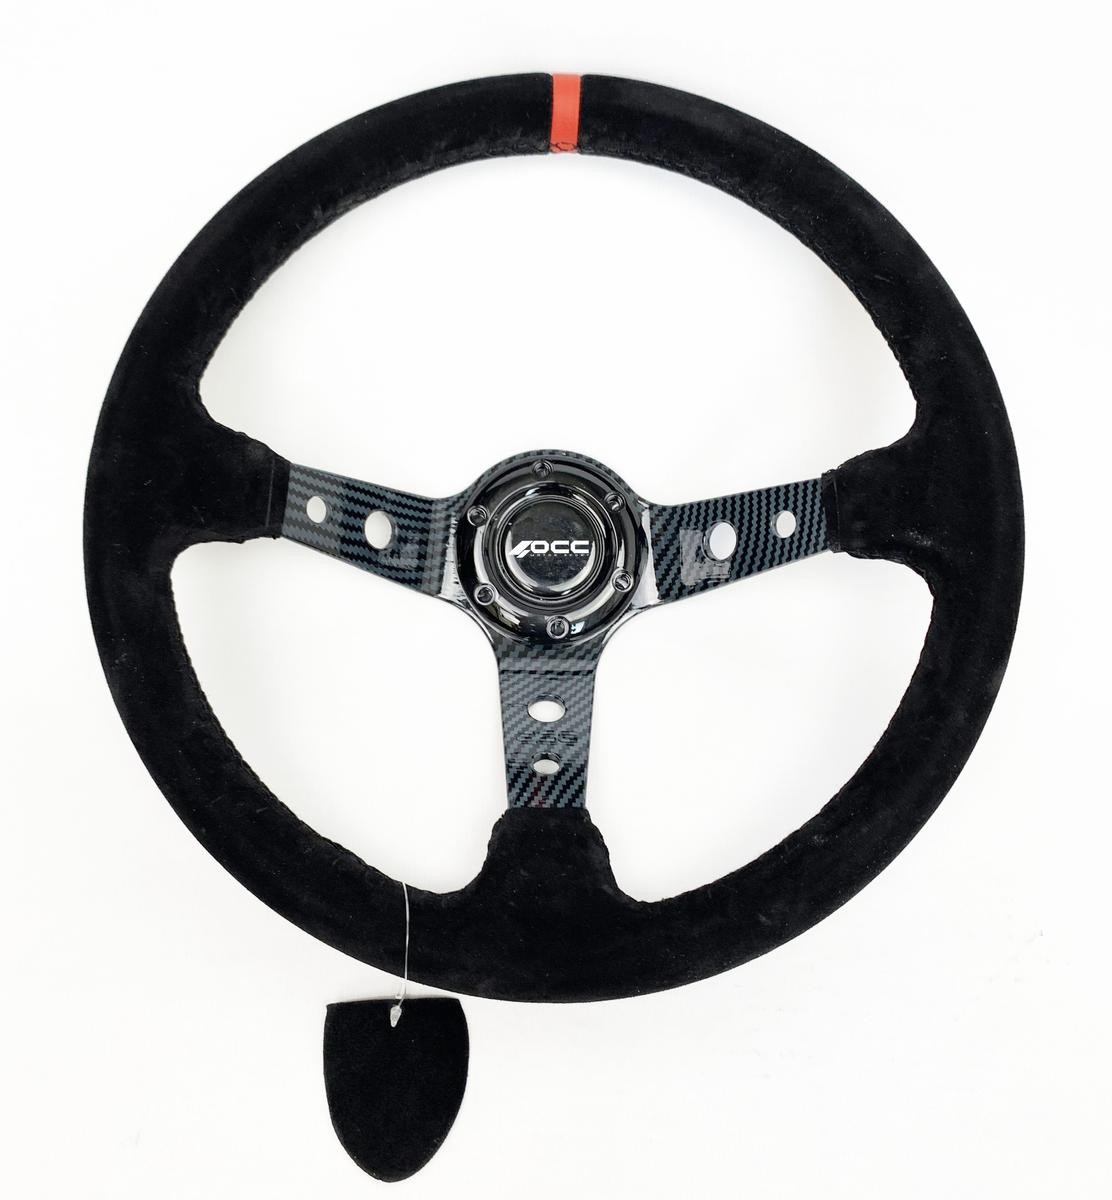 Opel INSIGNIA Sports steering wheel Occ Motorsport OCCVOL005 cheap